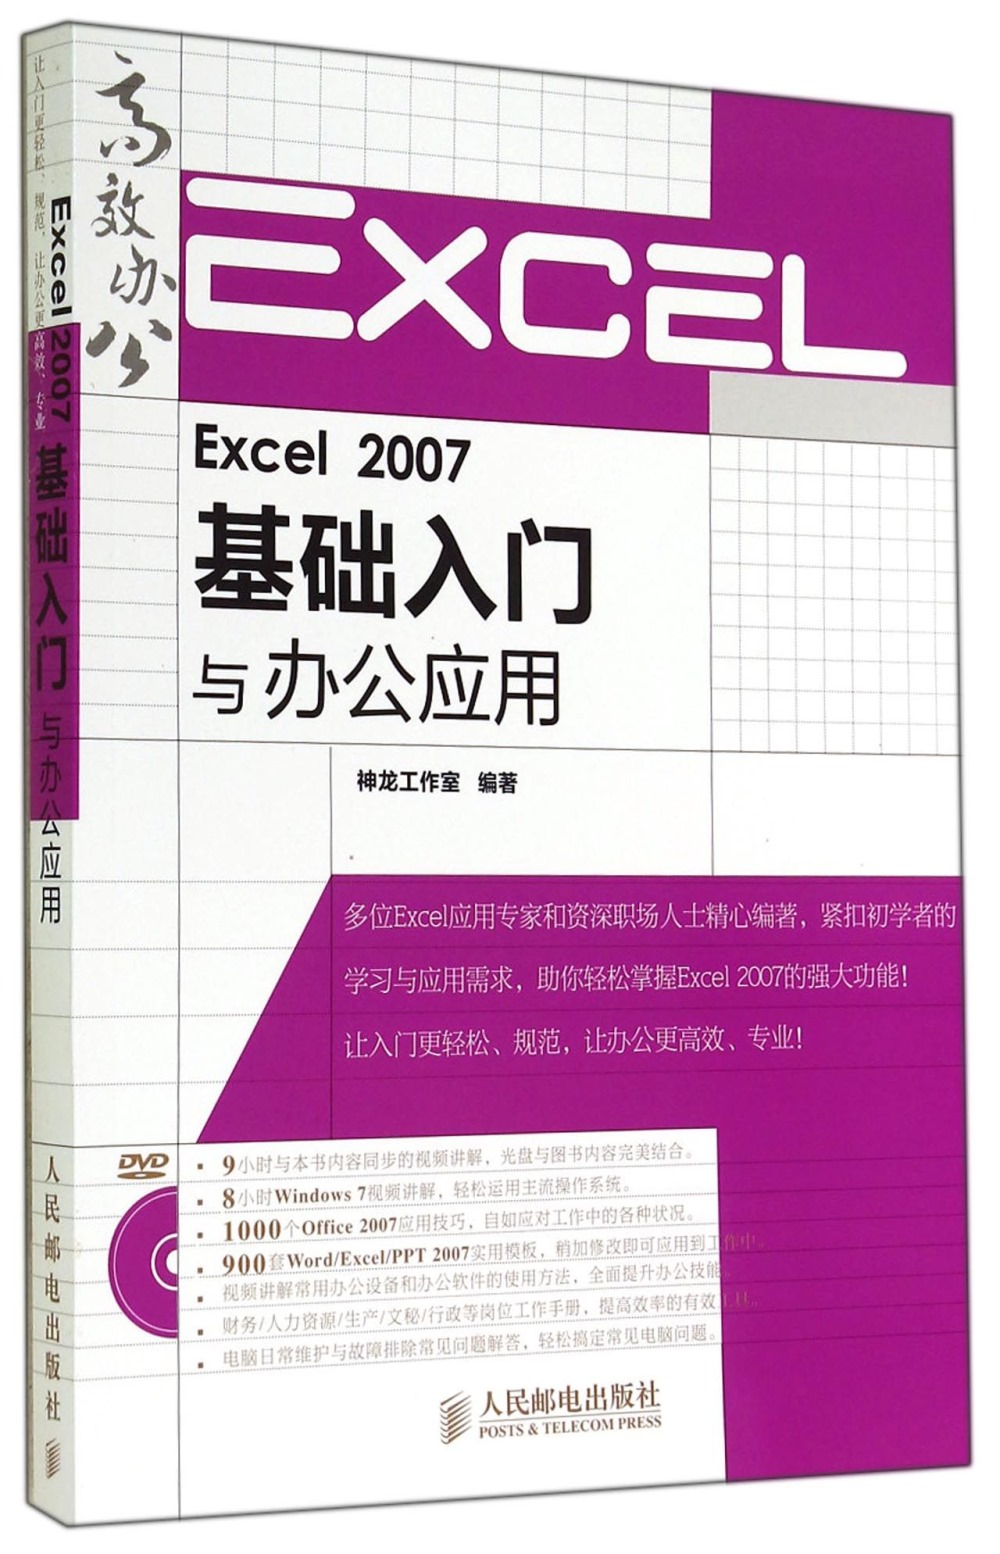 Excel 2007基礎入門與辦公應用